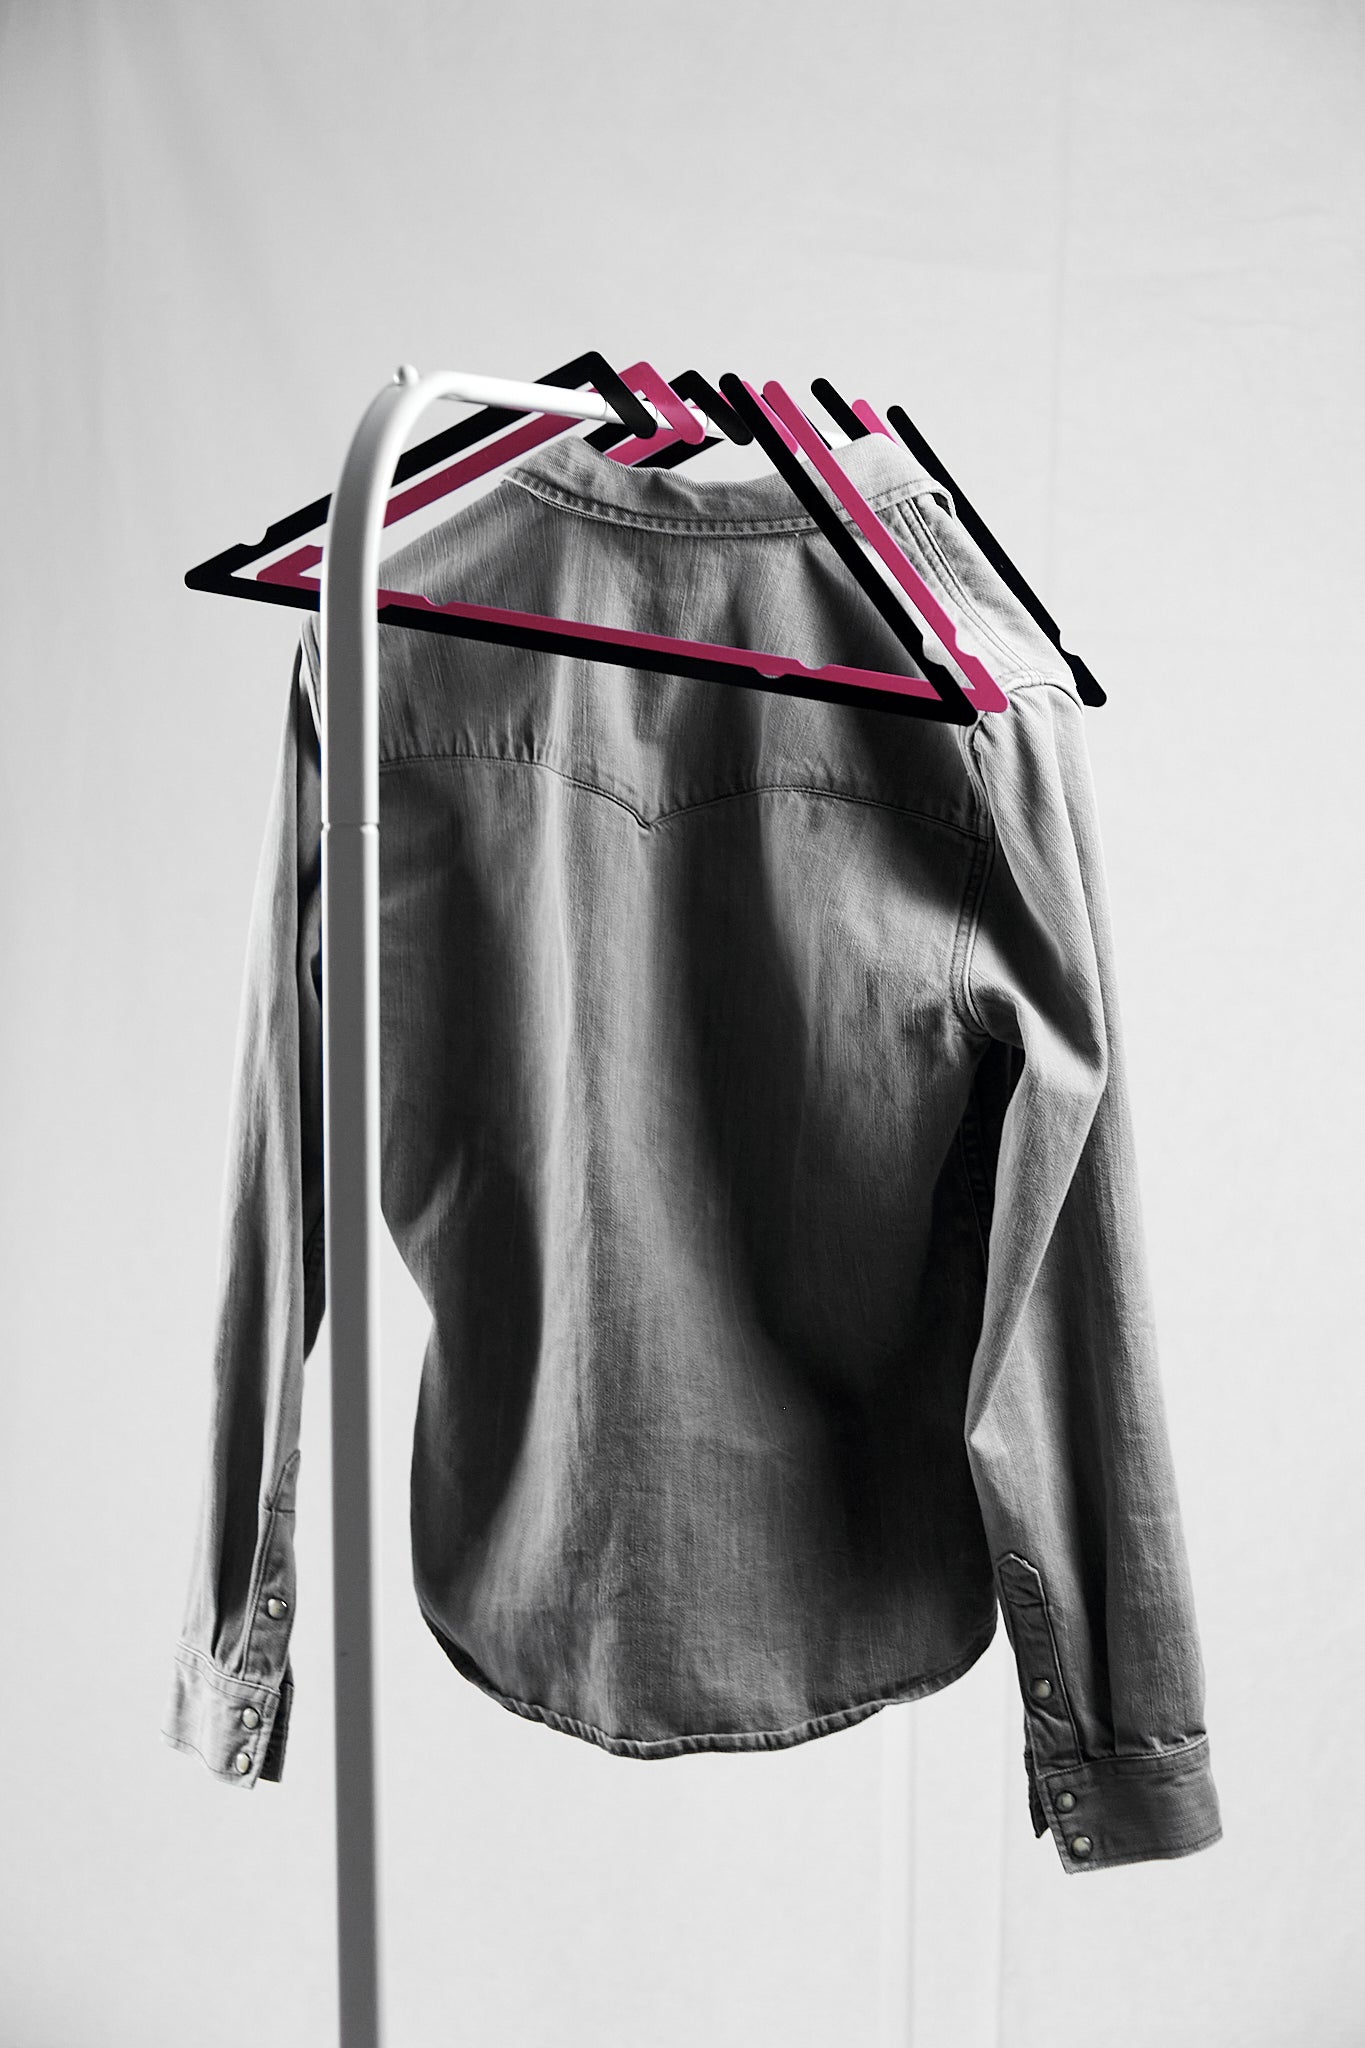 Pink Triangle coat hanger